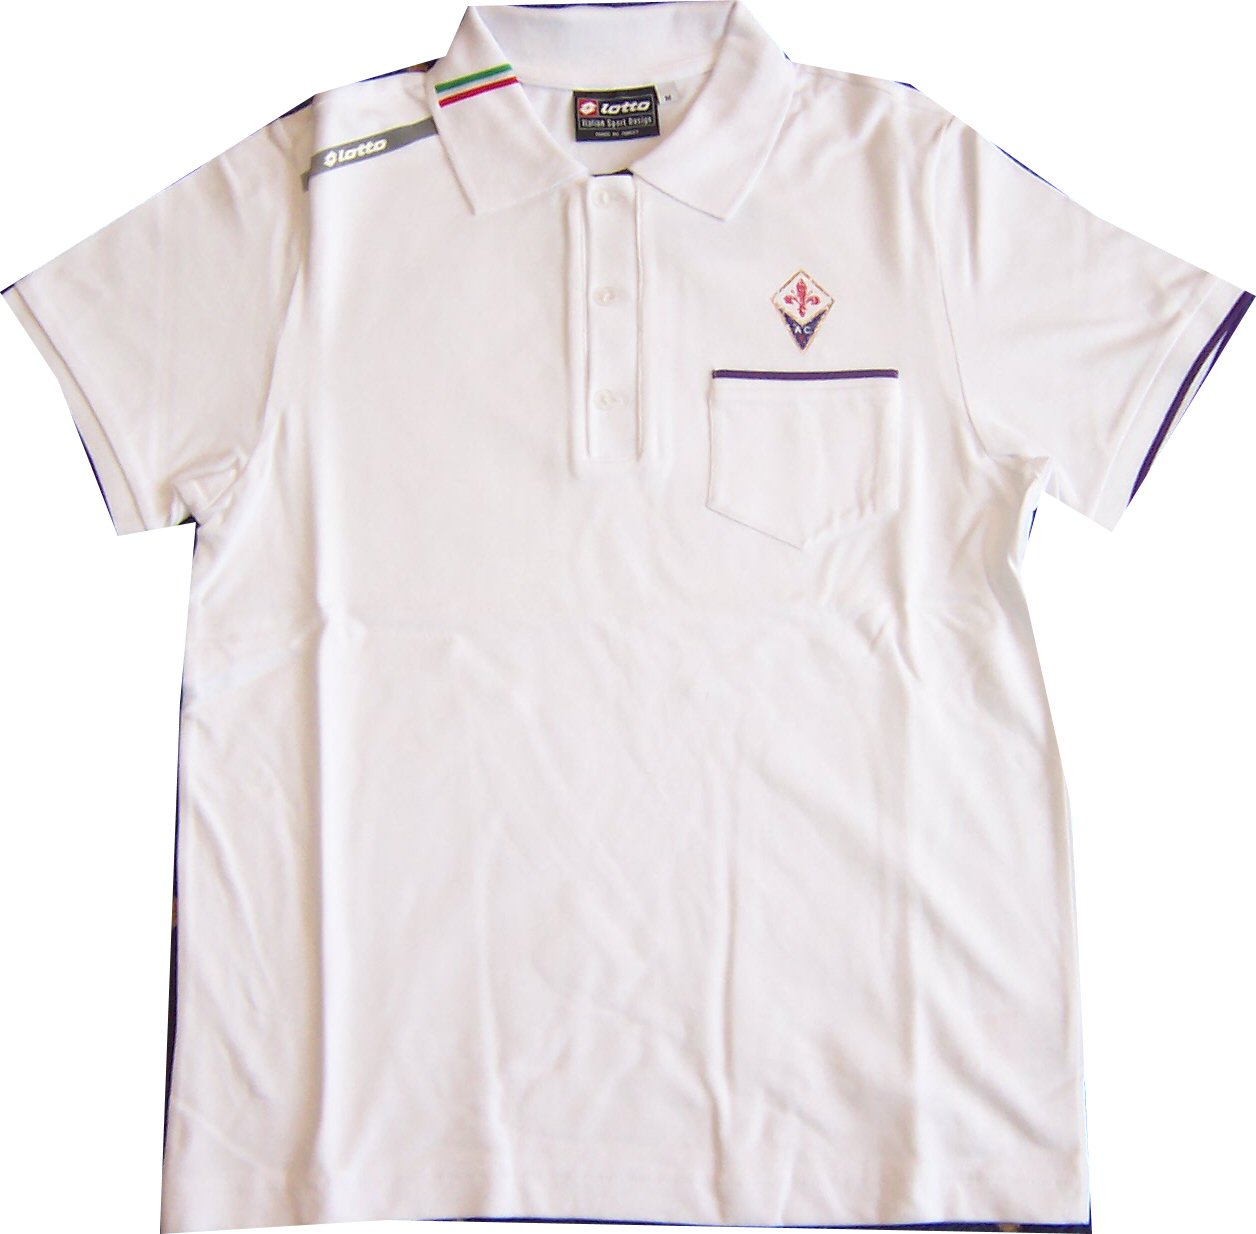 Lotto 06-07 Fiorentina Polo shirt (white)